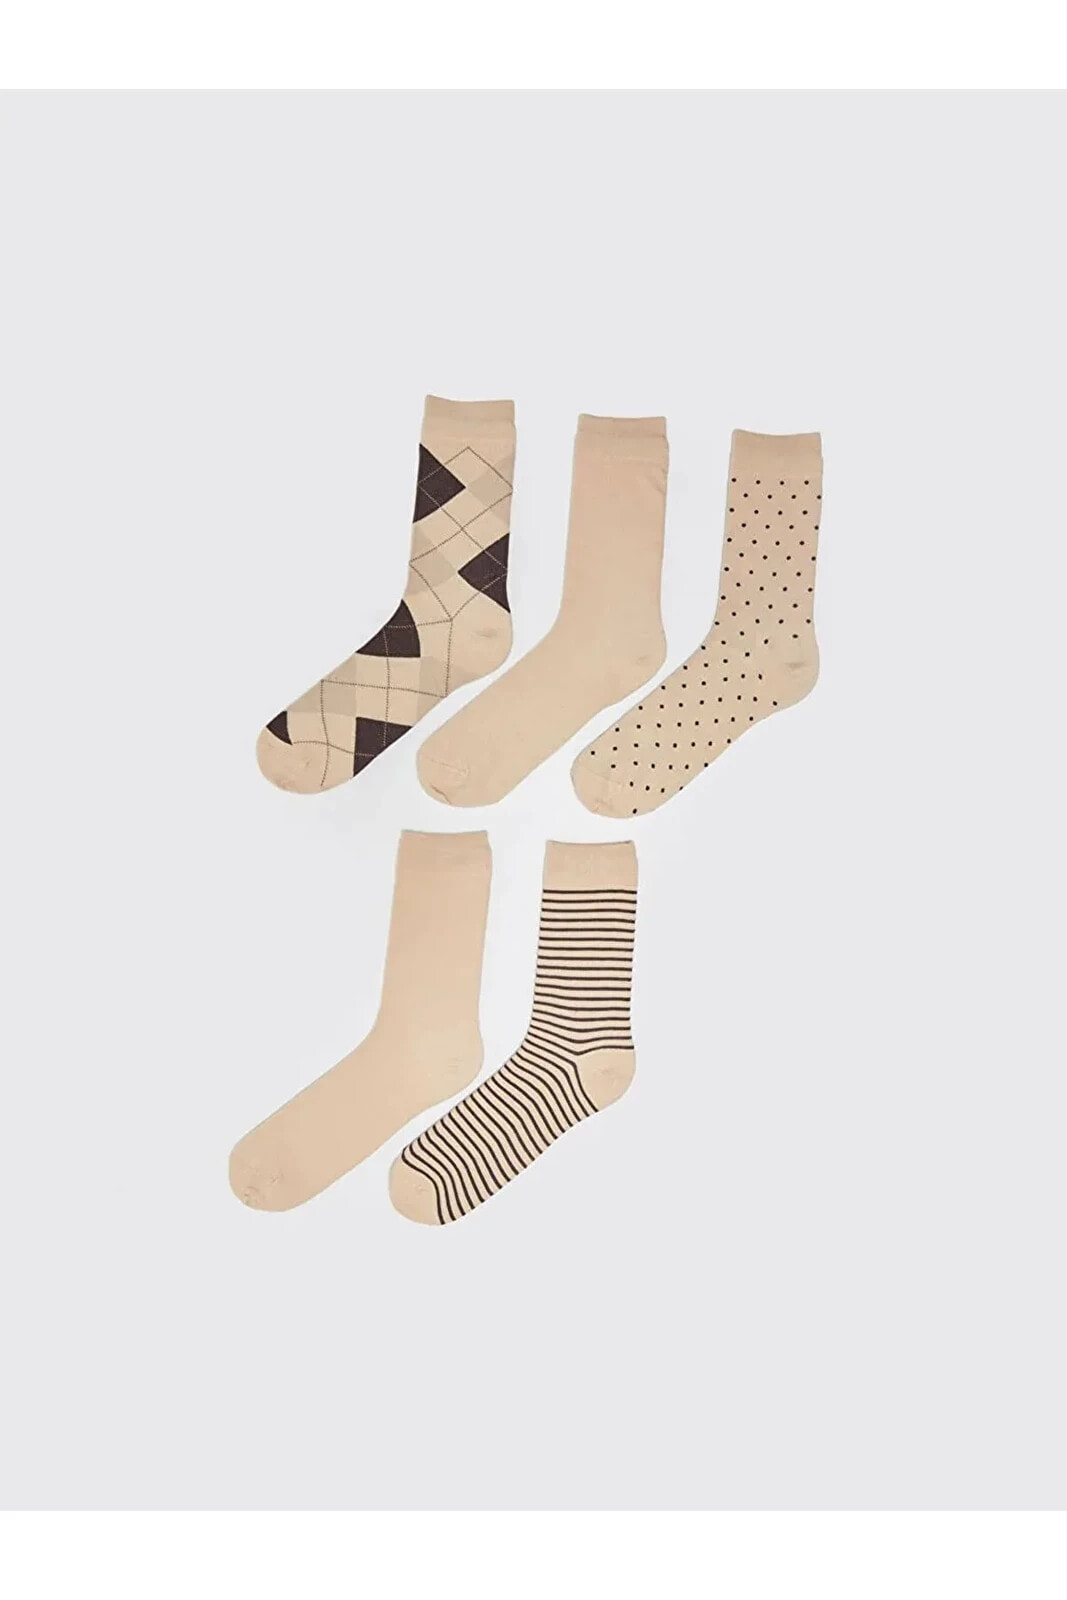 Aymira Giyimden Desenli Erkek Soket Çorap 5'li Viskon Karışımlı Esnek Kumaştan